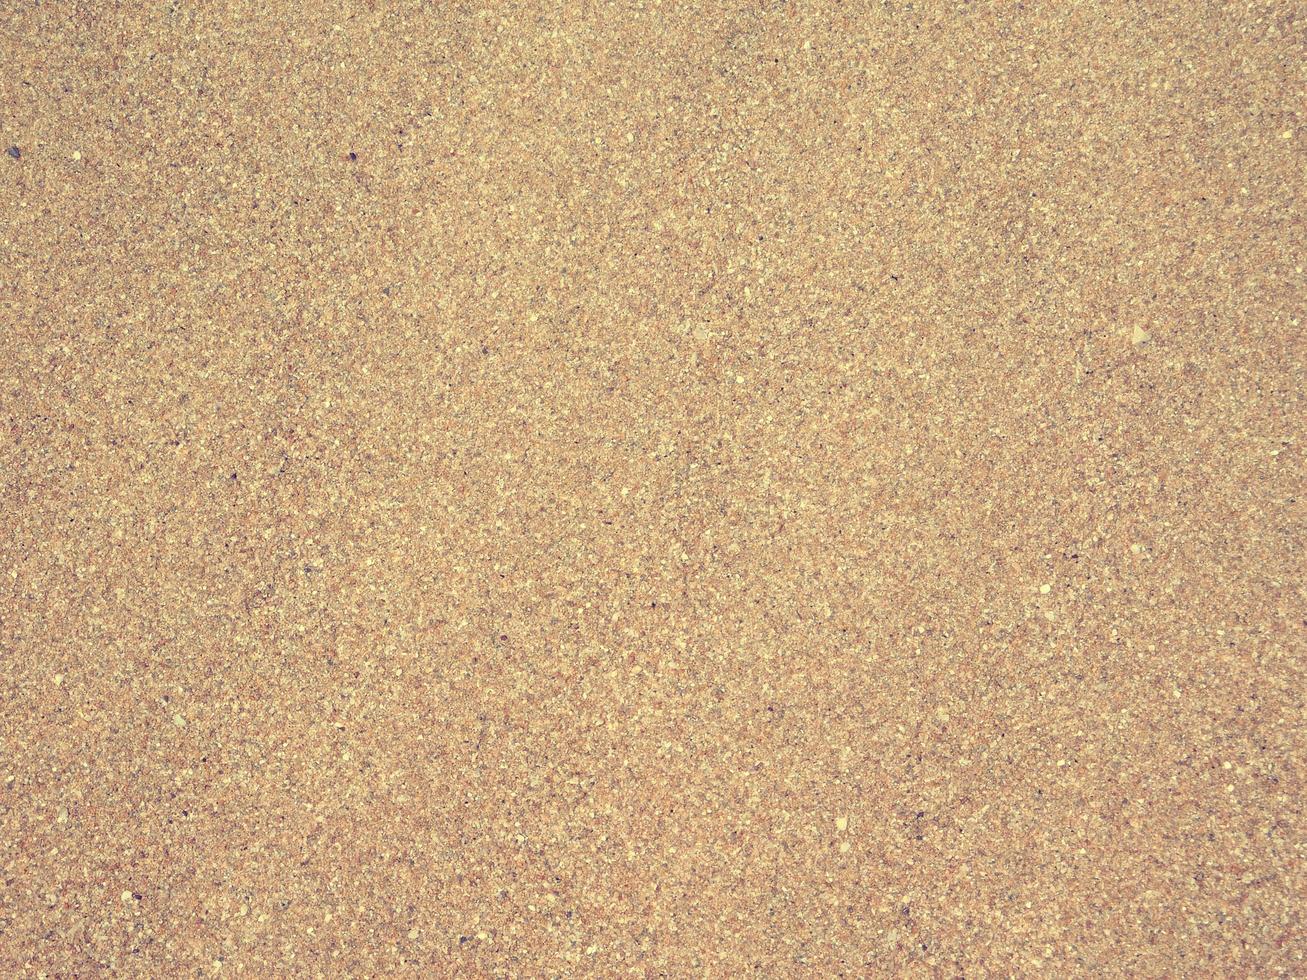 textura de areia ao ar livre foto